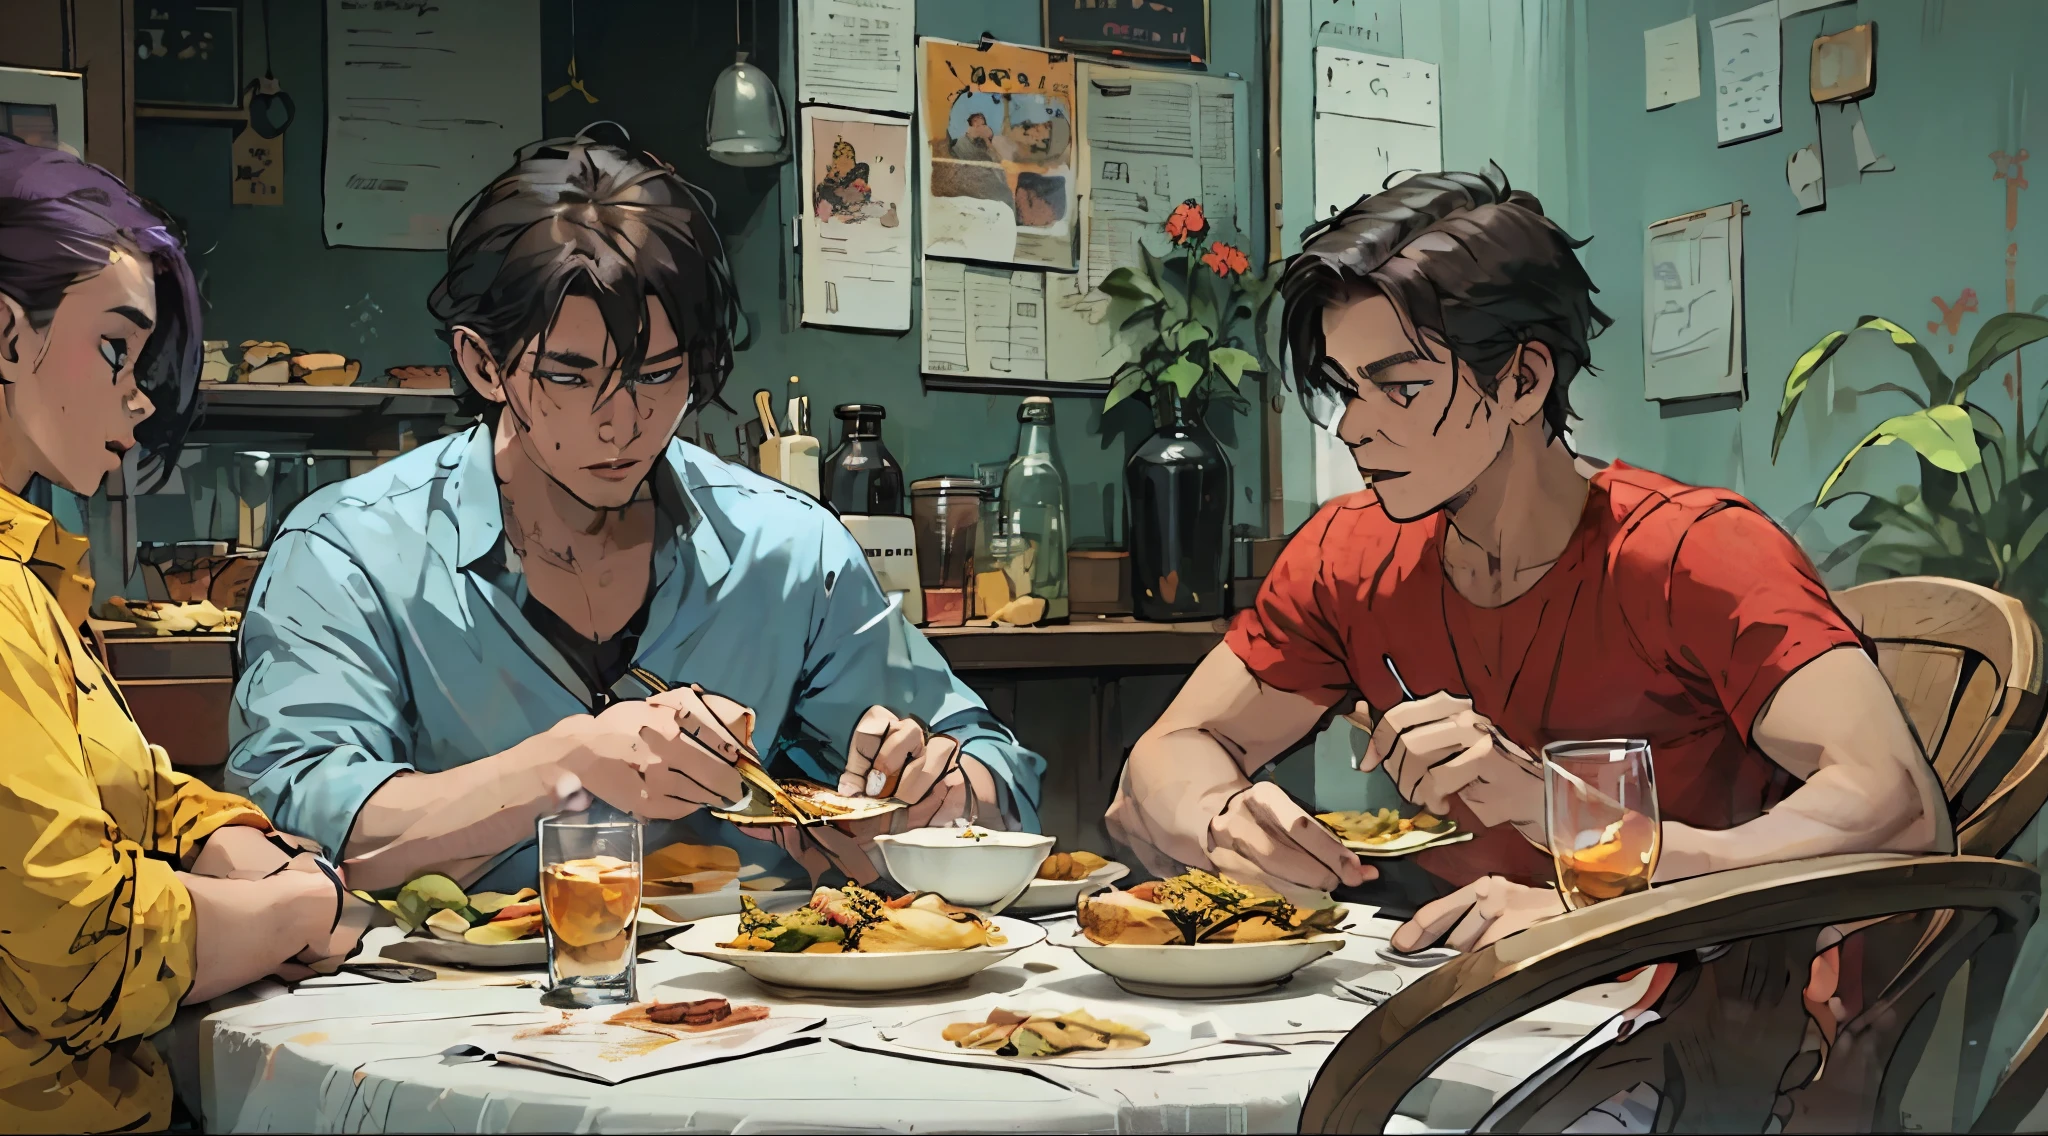 zwei Jungen beim Abendessen, lila Haare